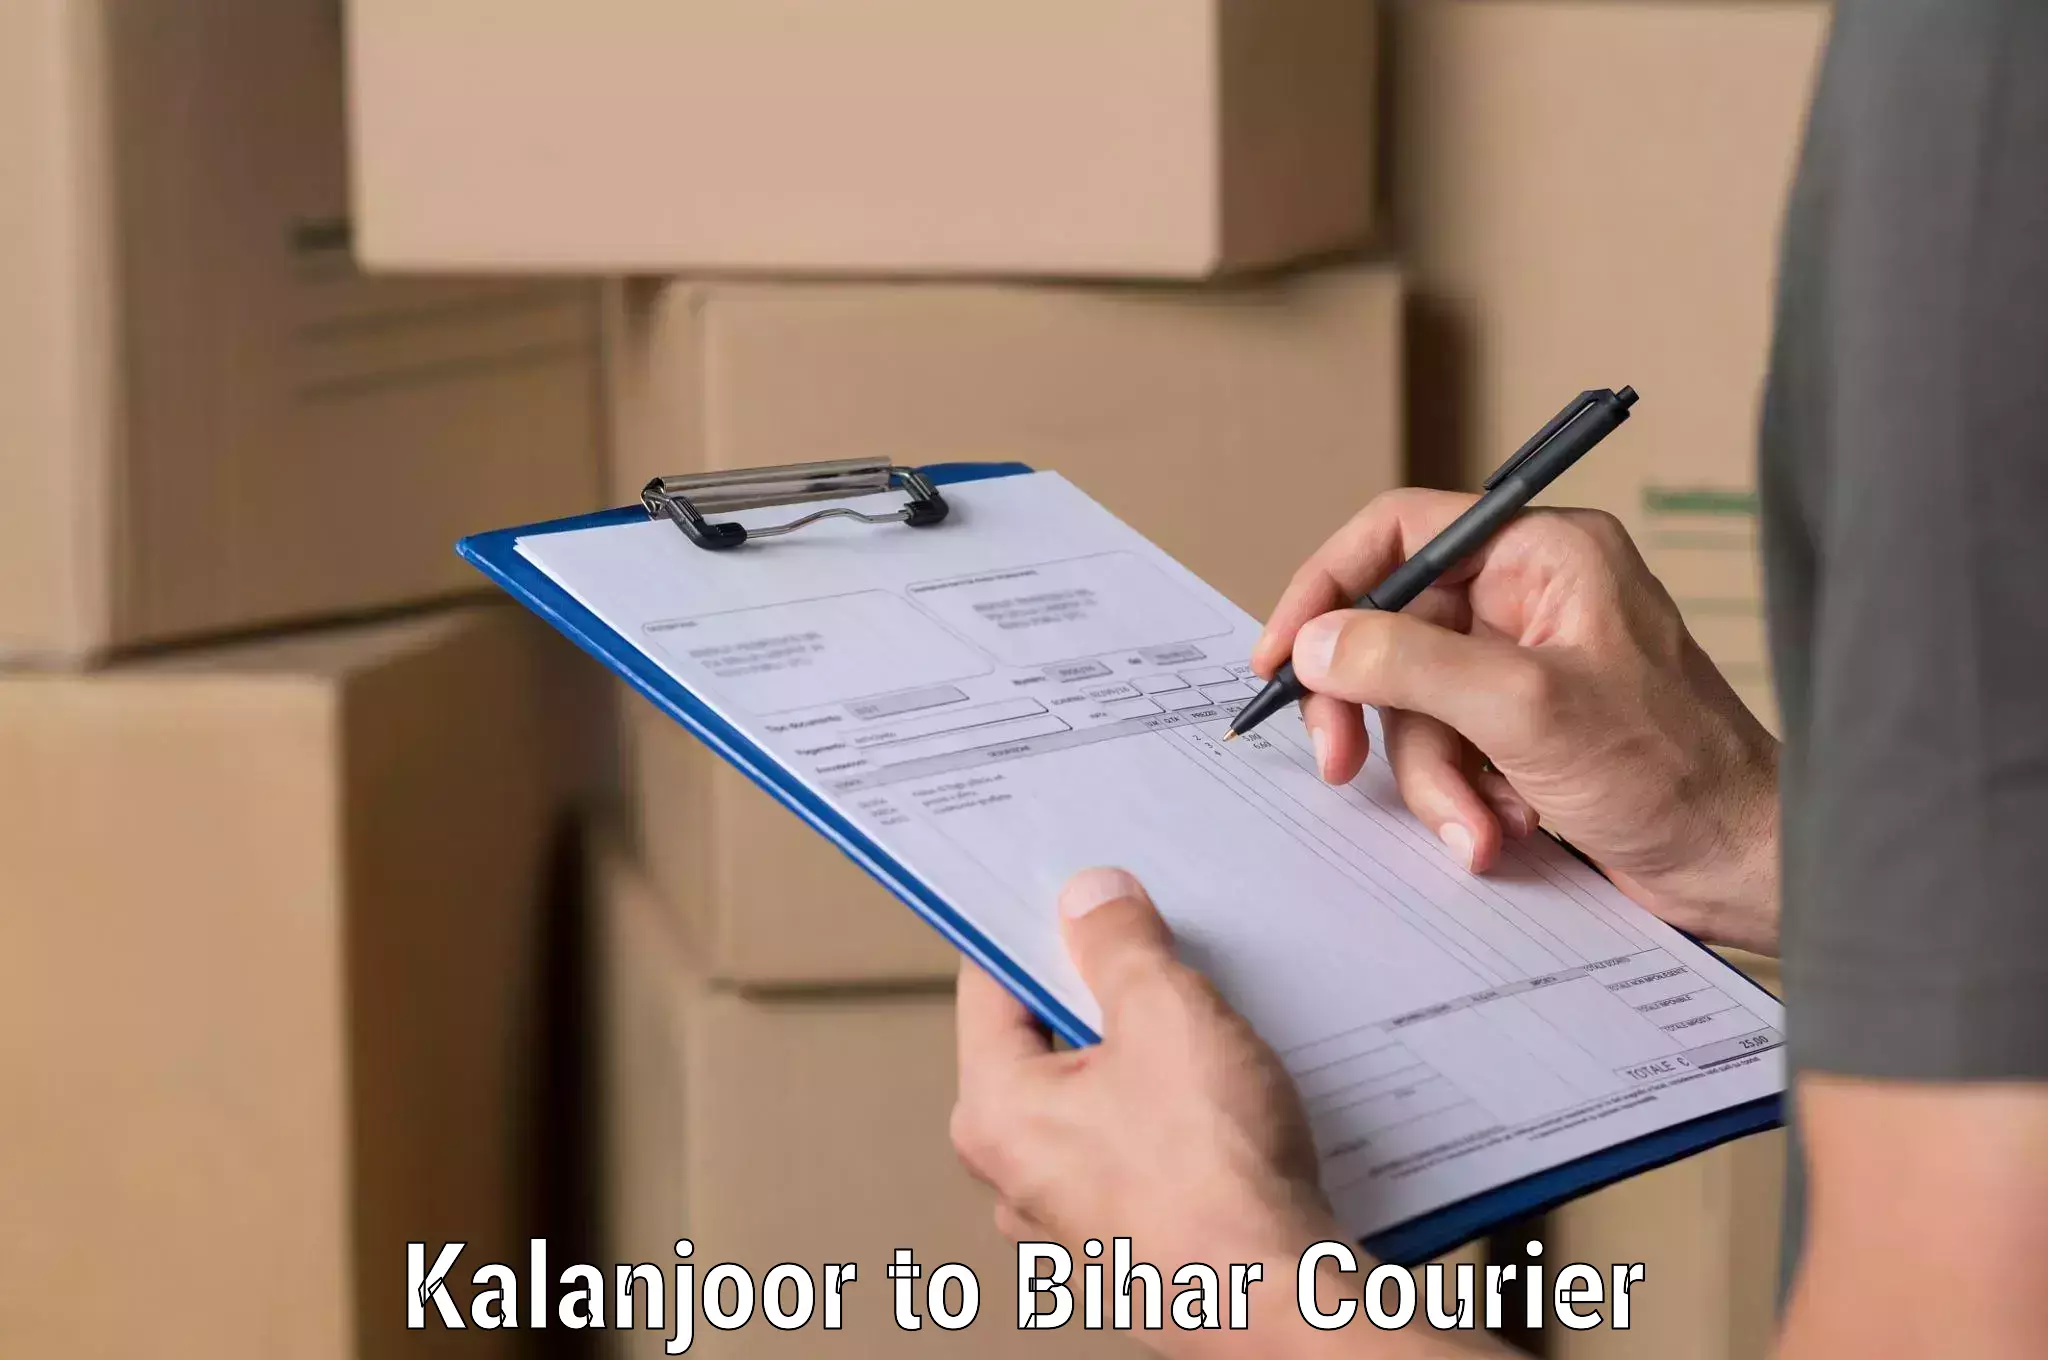 Smart courier technologies Kalanjoor to Bihar